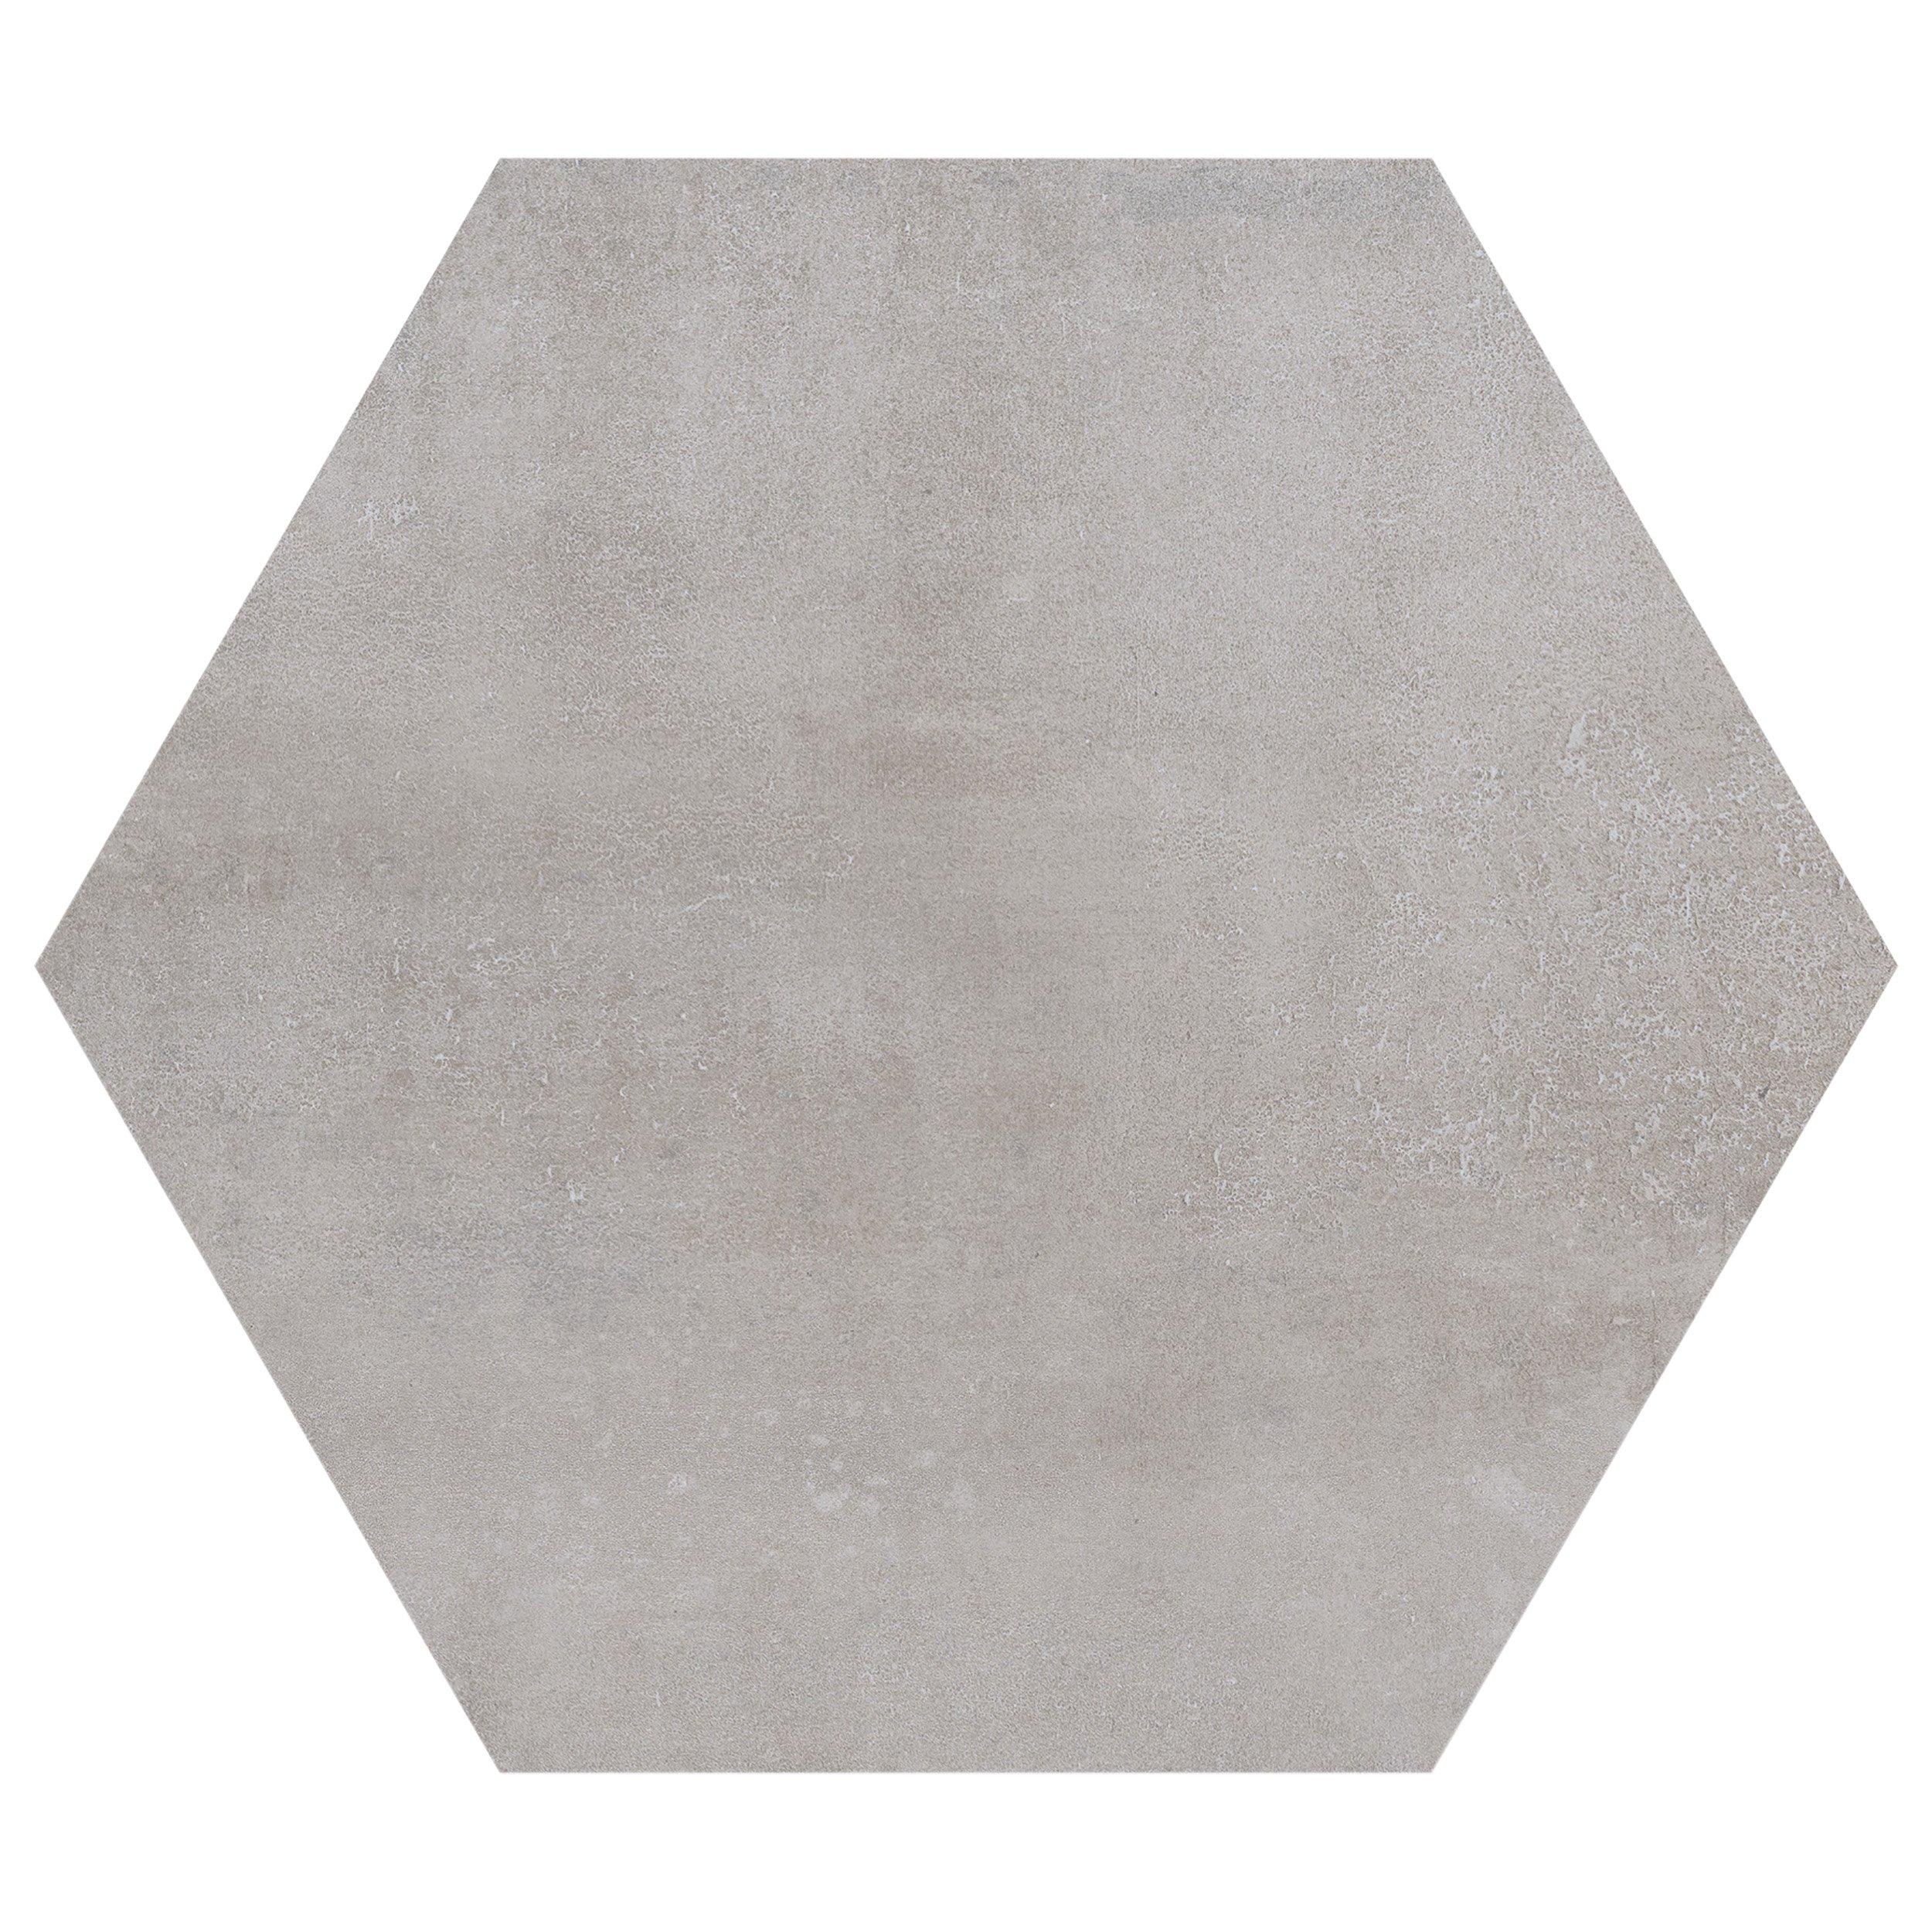 Candler Gray Matte Porcelain Tile | Floor and Decor